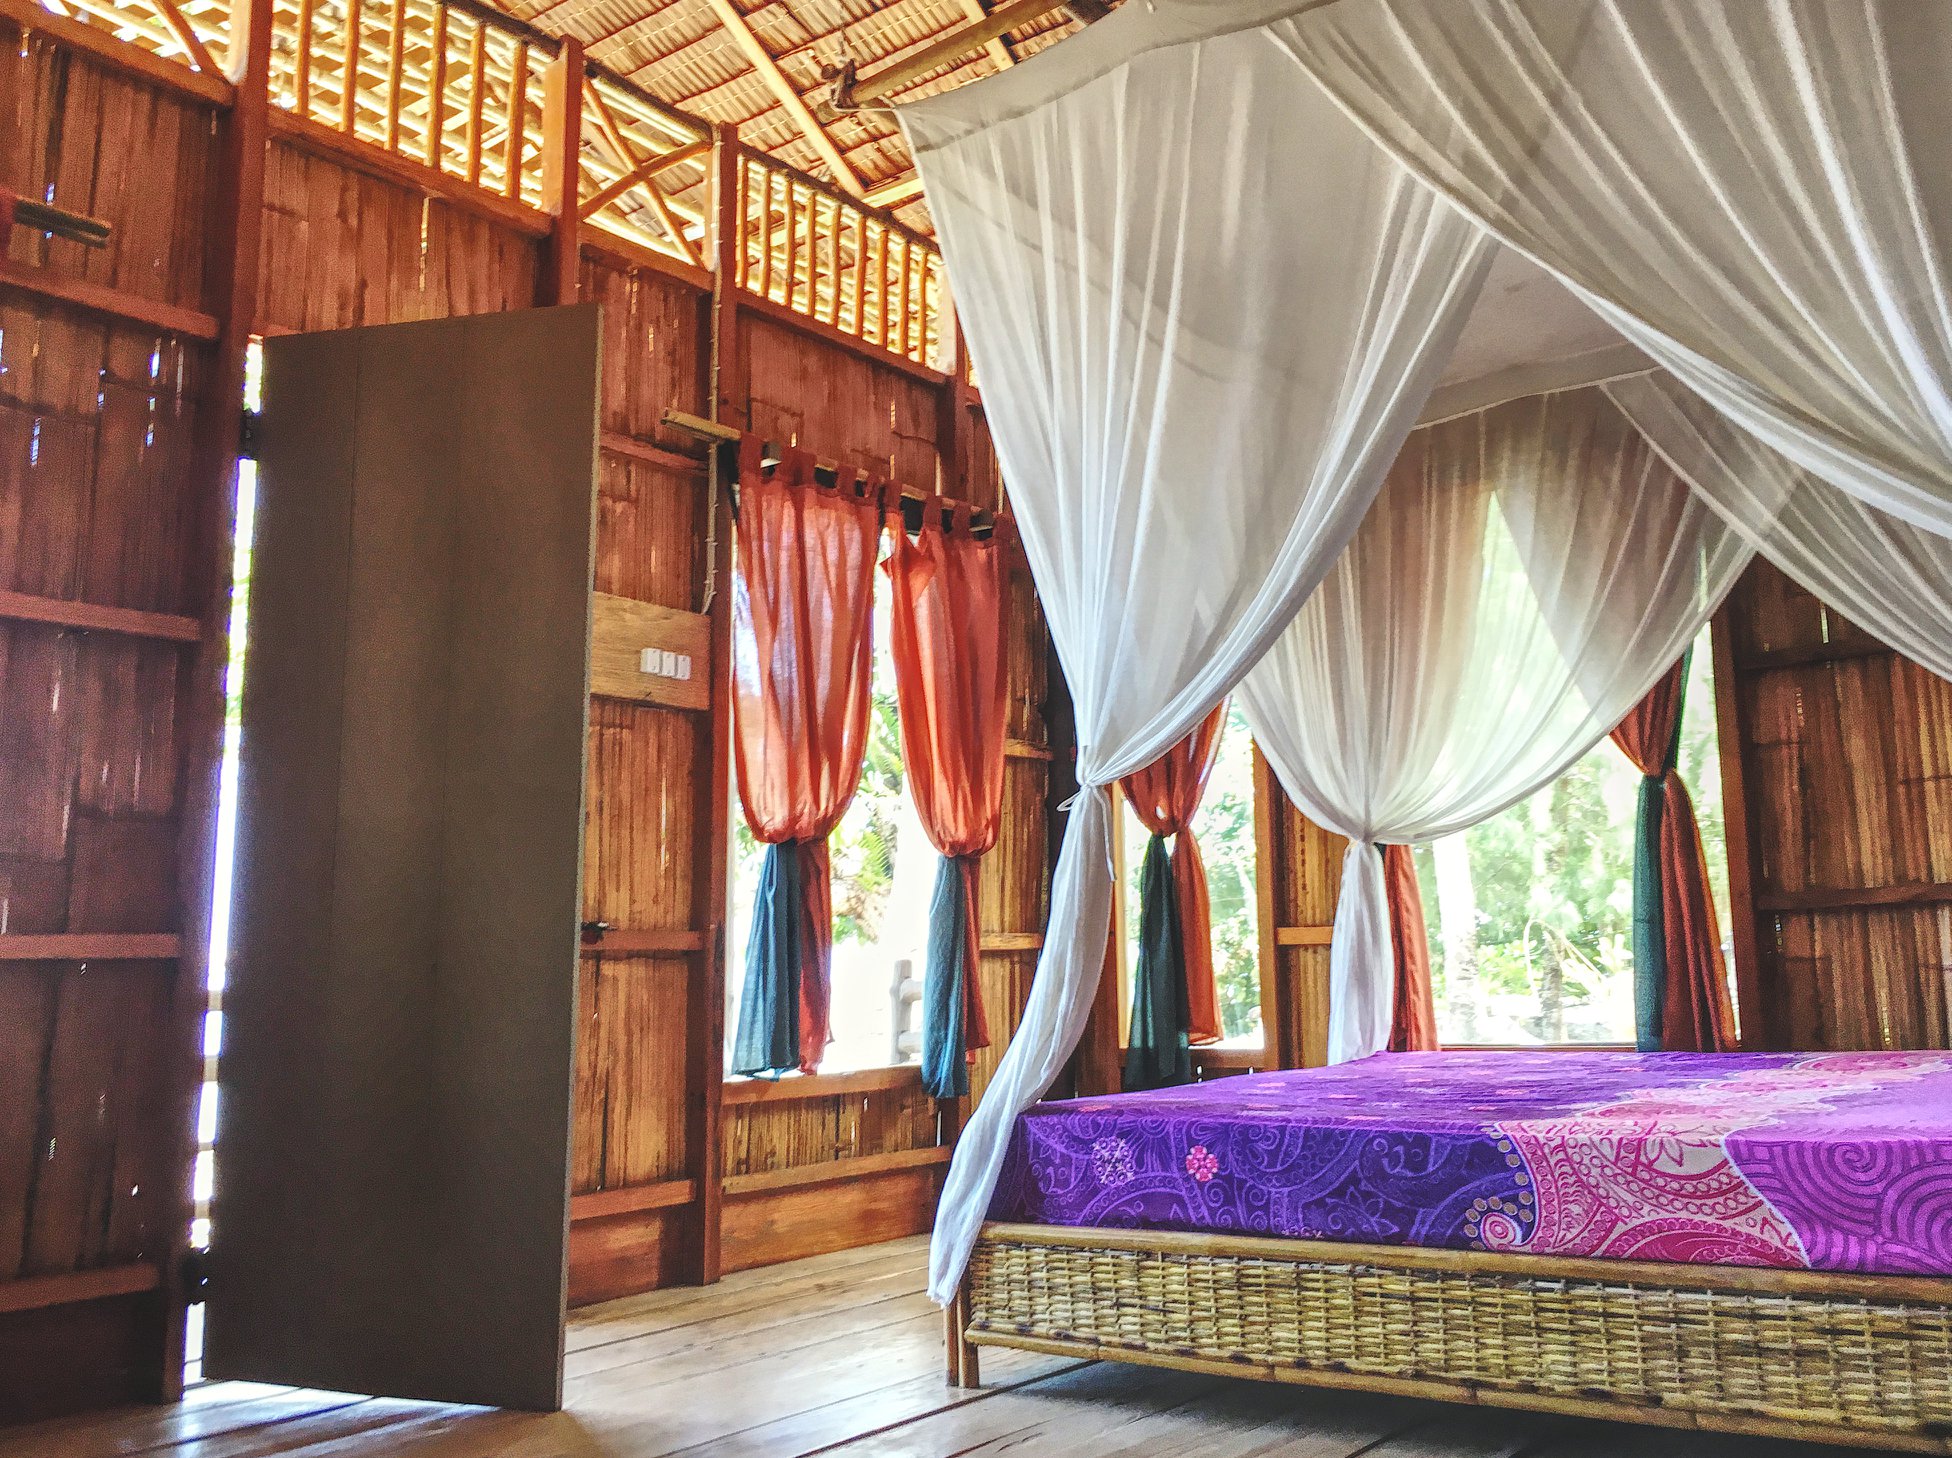 Zimmer mit Himmelbett aus Holz und Rattan, fließende Vorhänge bunt und wieß. Bild von Local Hideaways